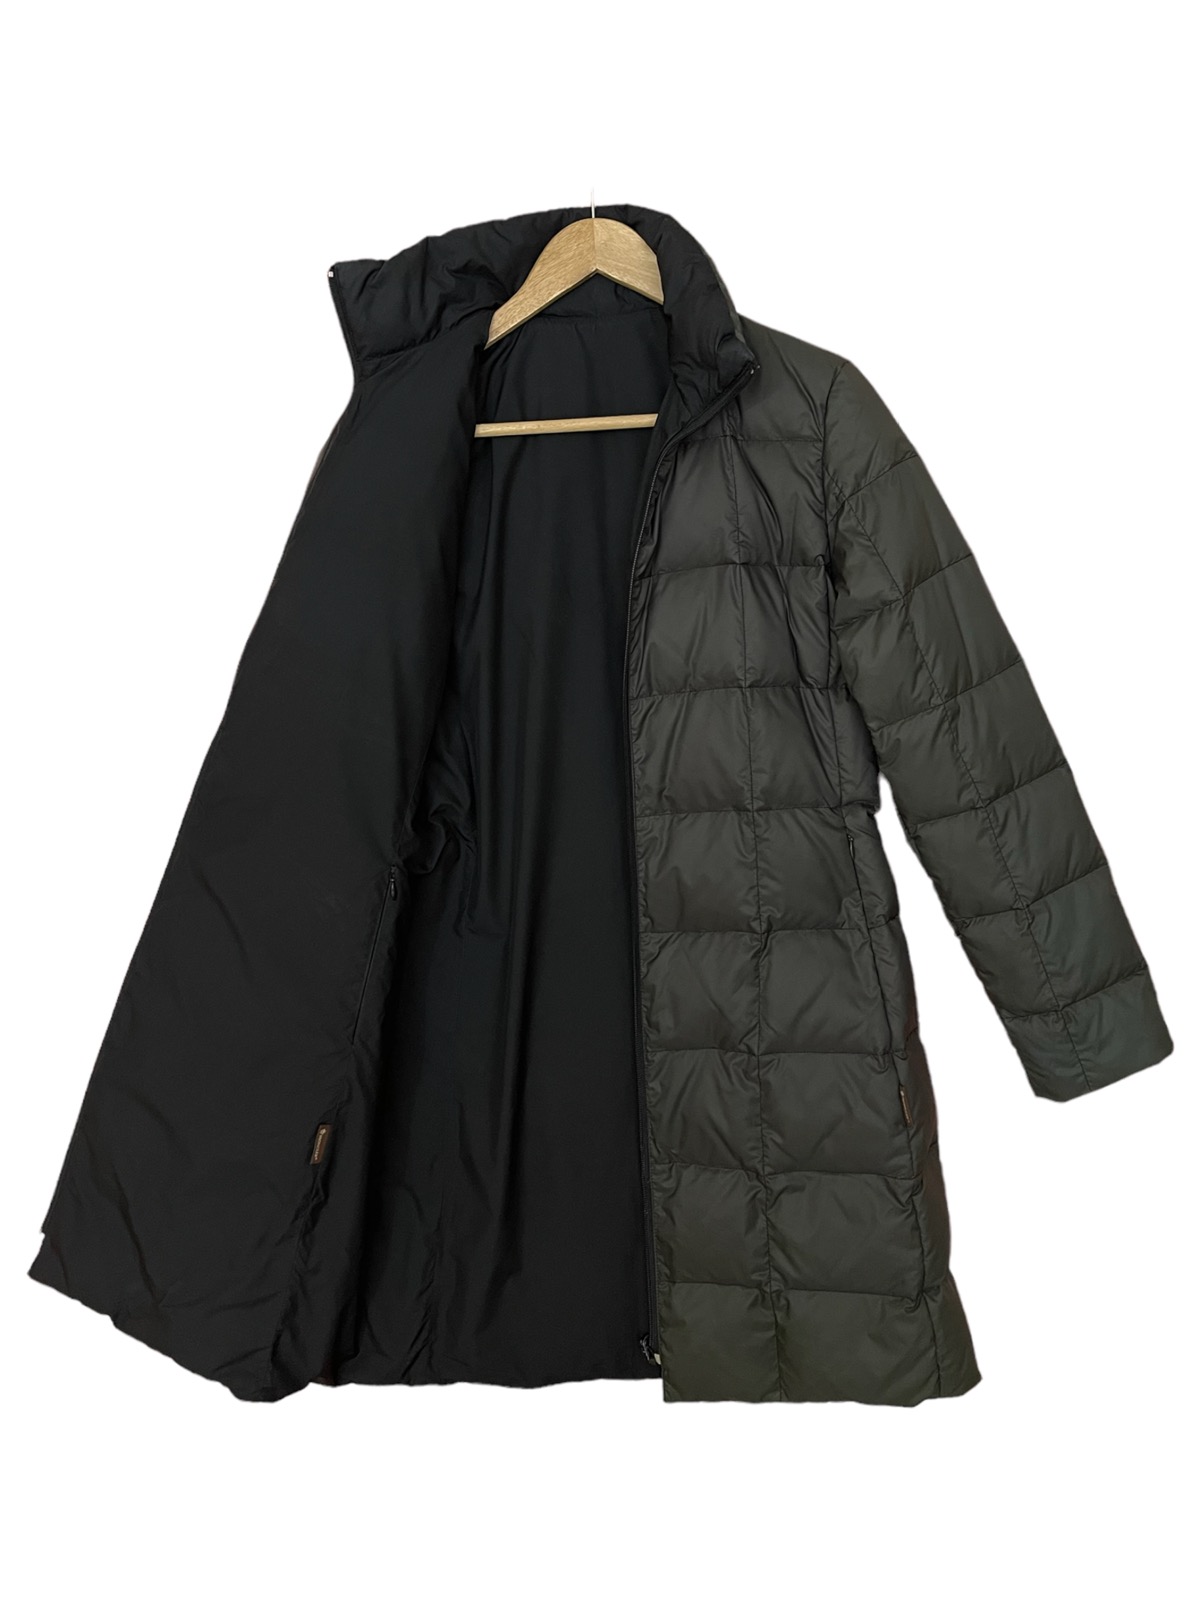 Moncler long puffer jacket reversible down jacket - 5